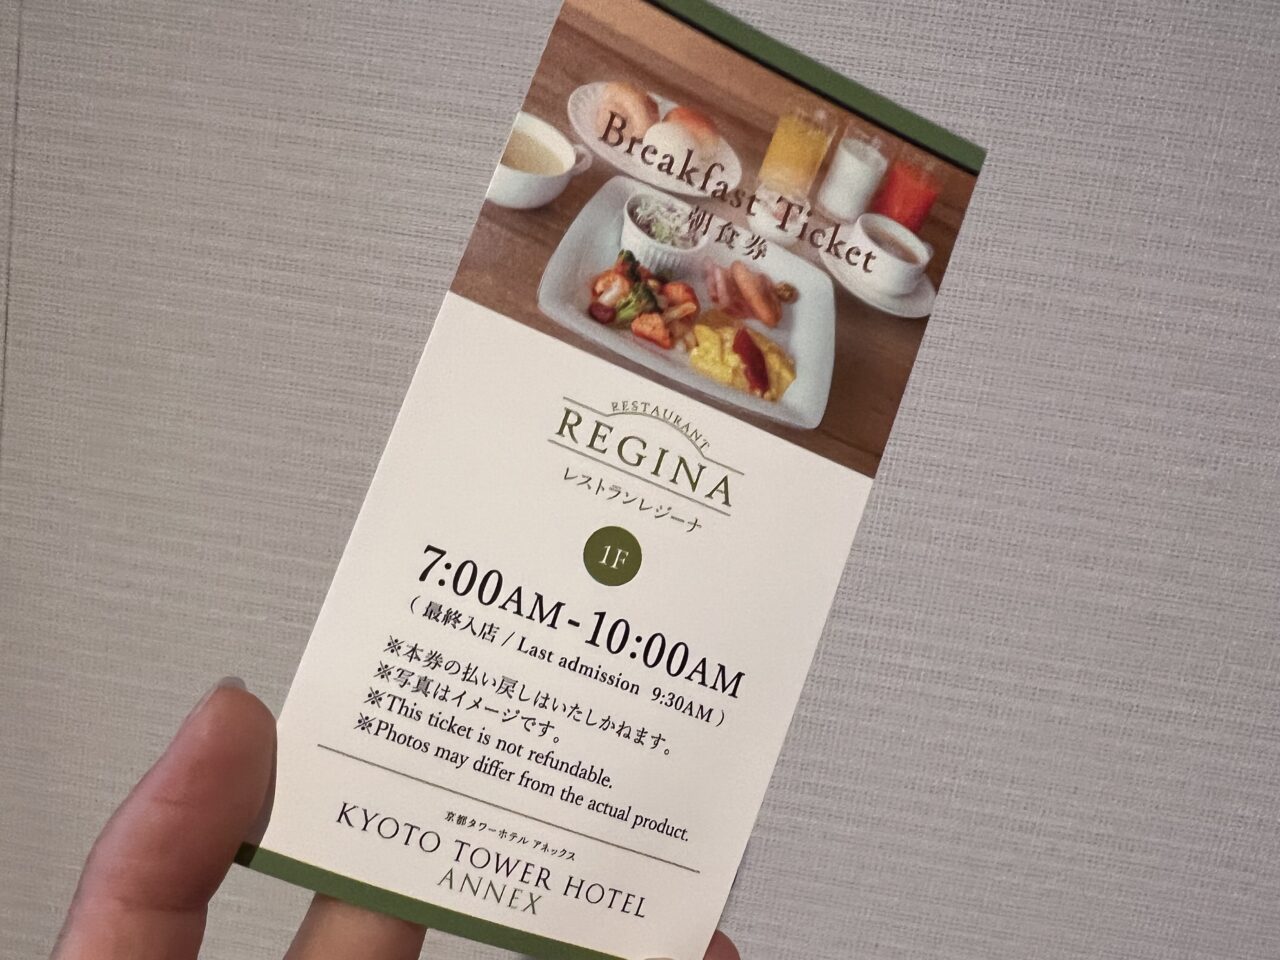 京都タワーホテルアネックスの朝食チケット